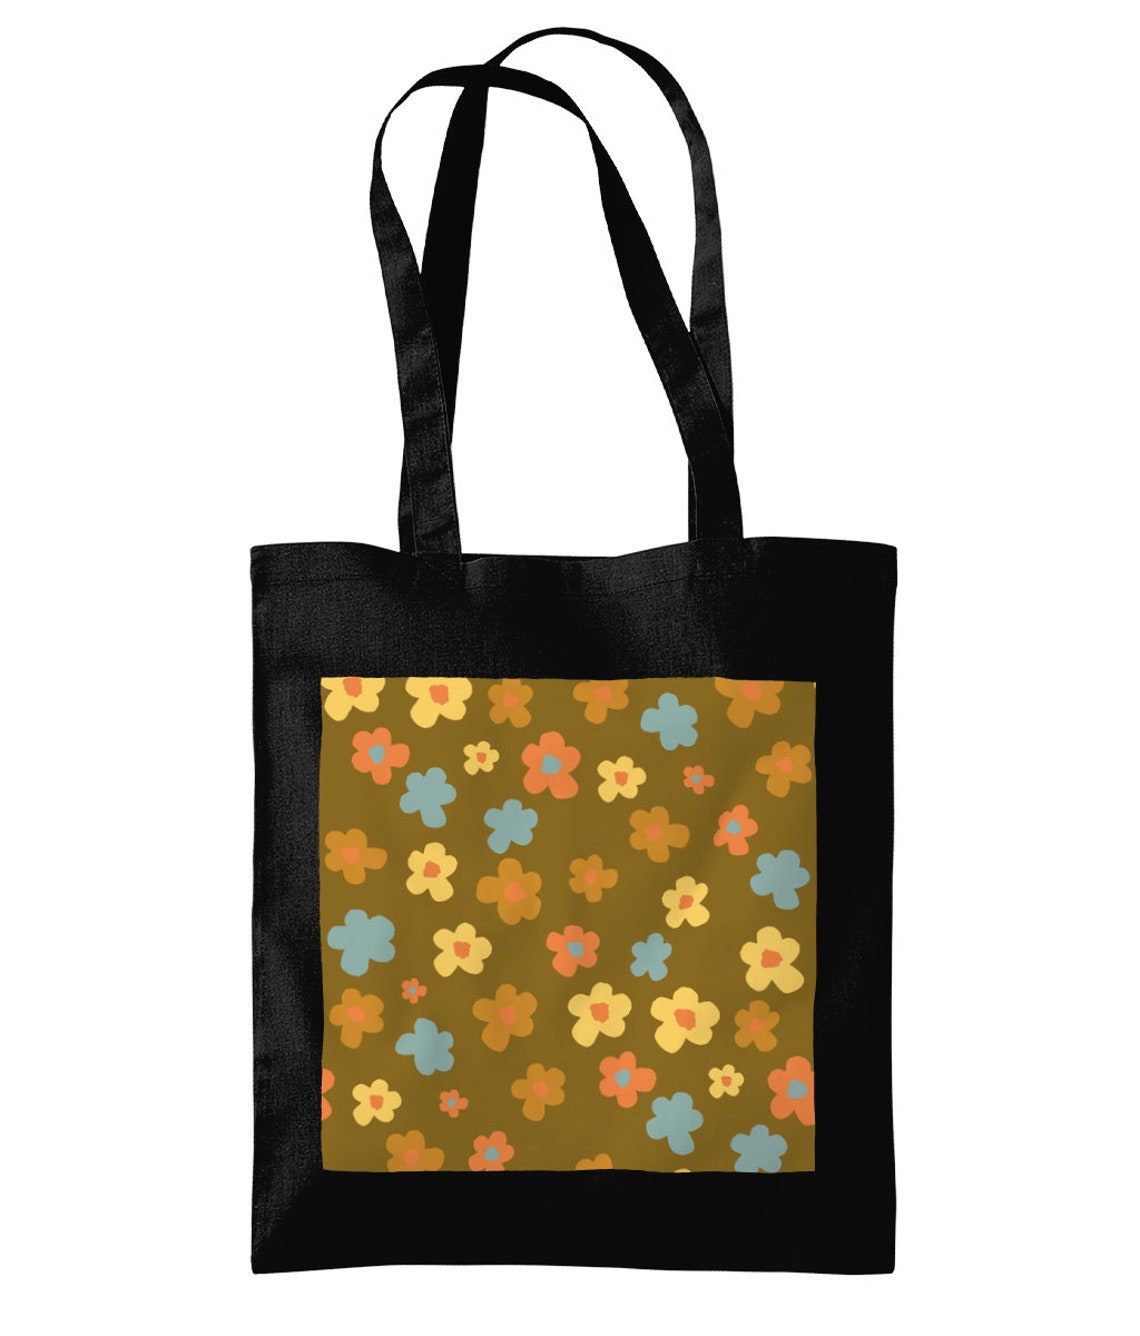 Retro / vintage Shoulder Tote Bag 70s floral style pattern | Etsy